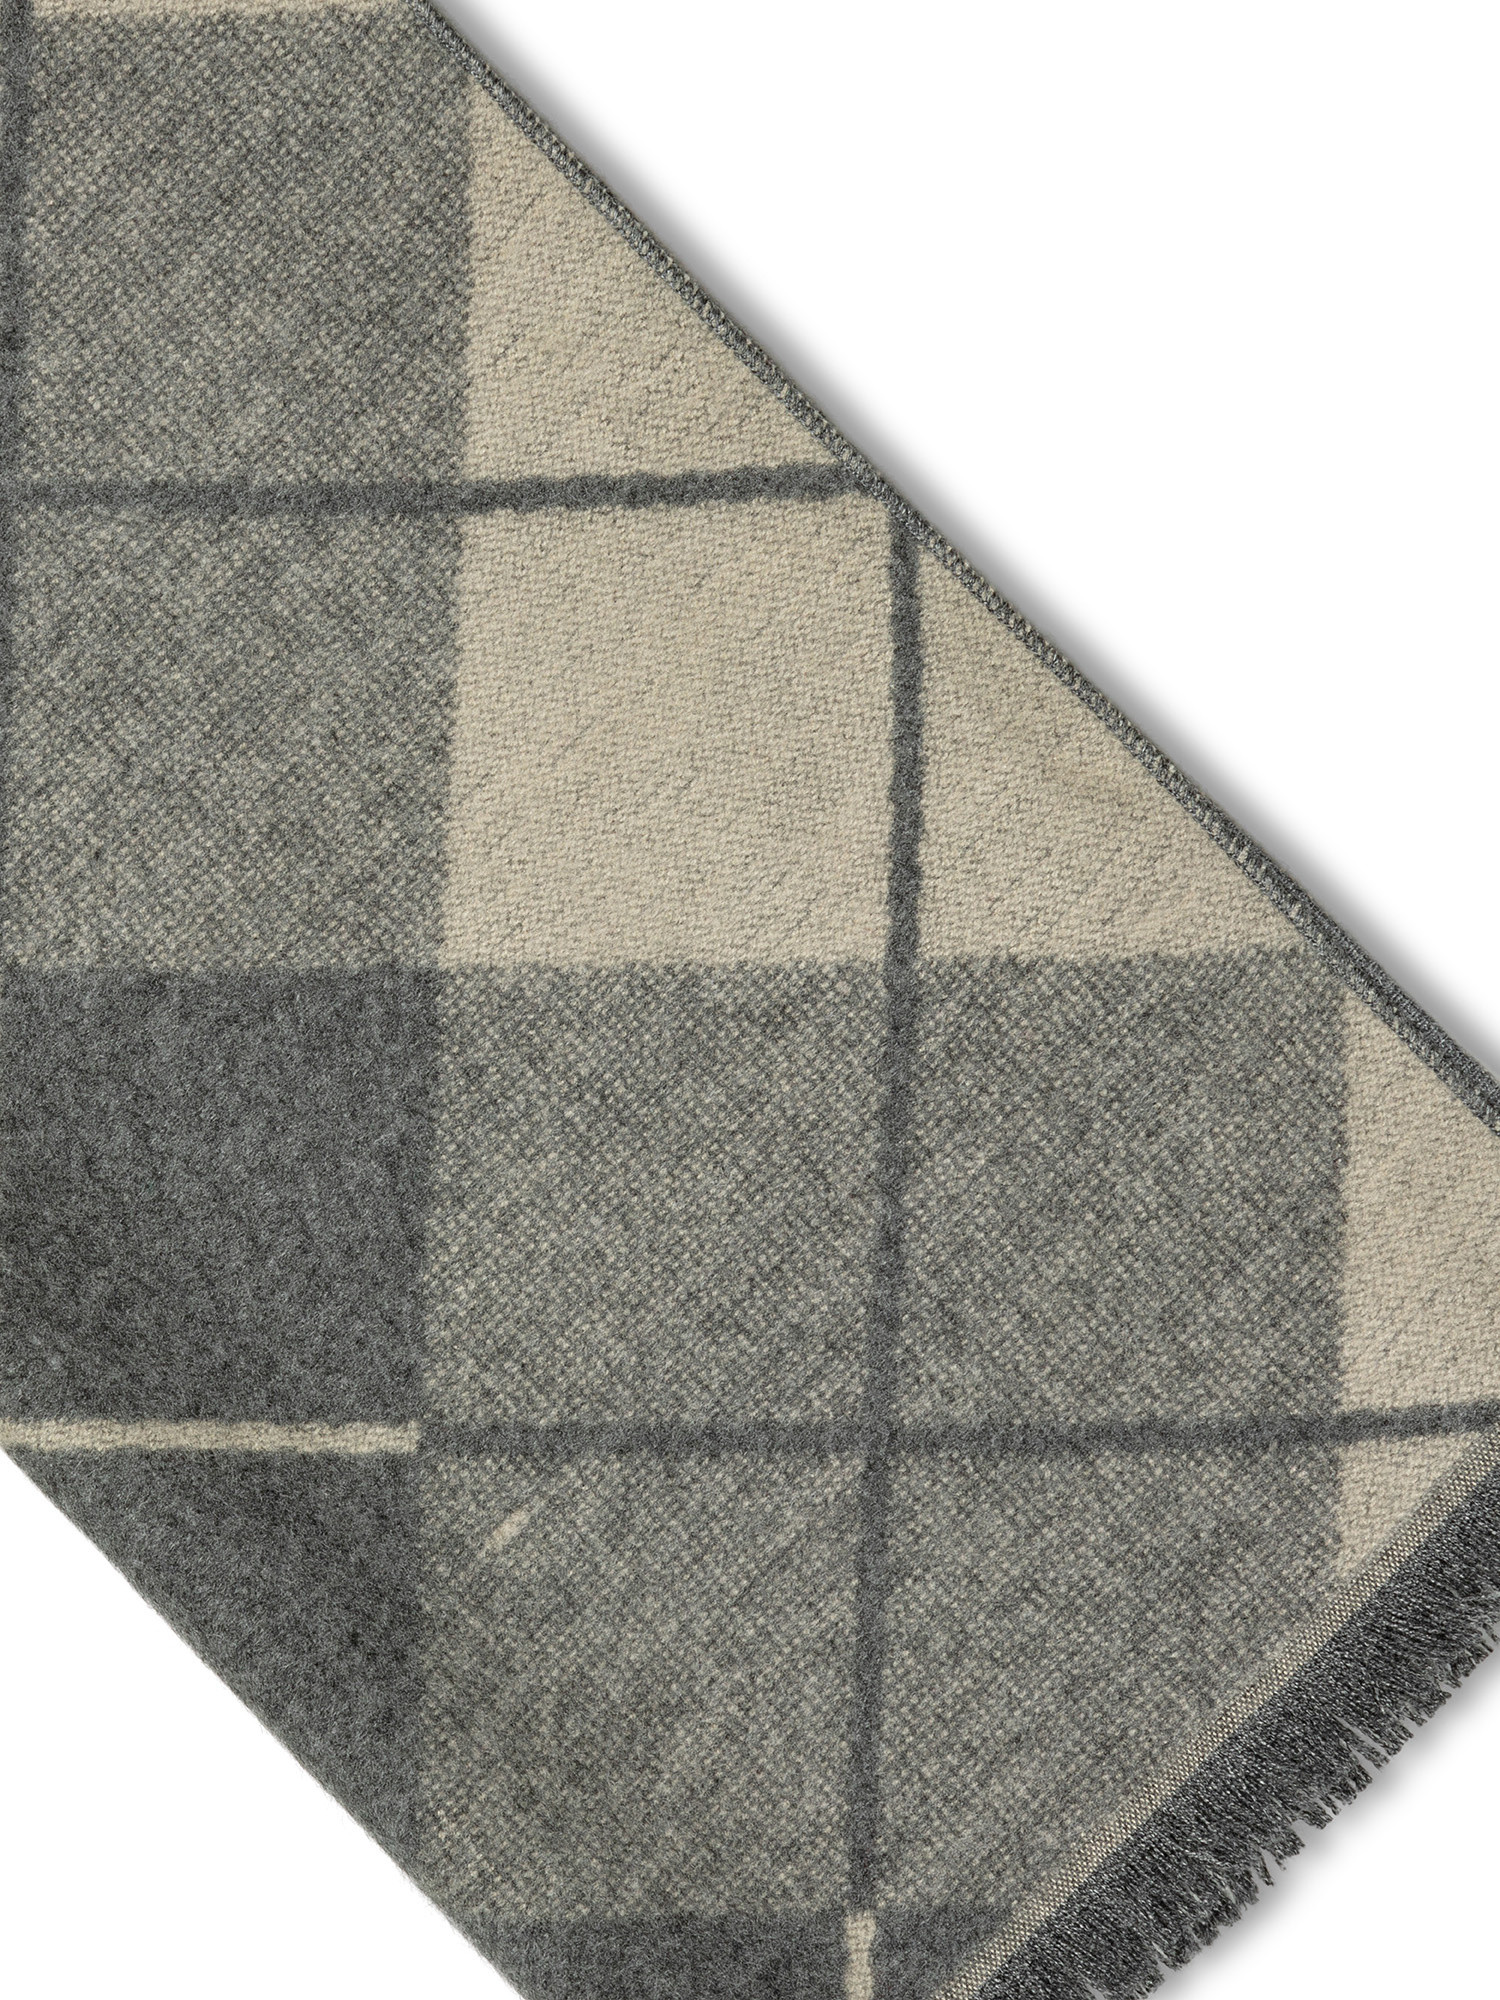 Luca D'Altieri - Diamond-patterned scarf, Light Beige, large image number 1